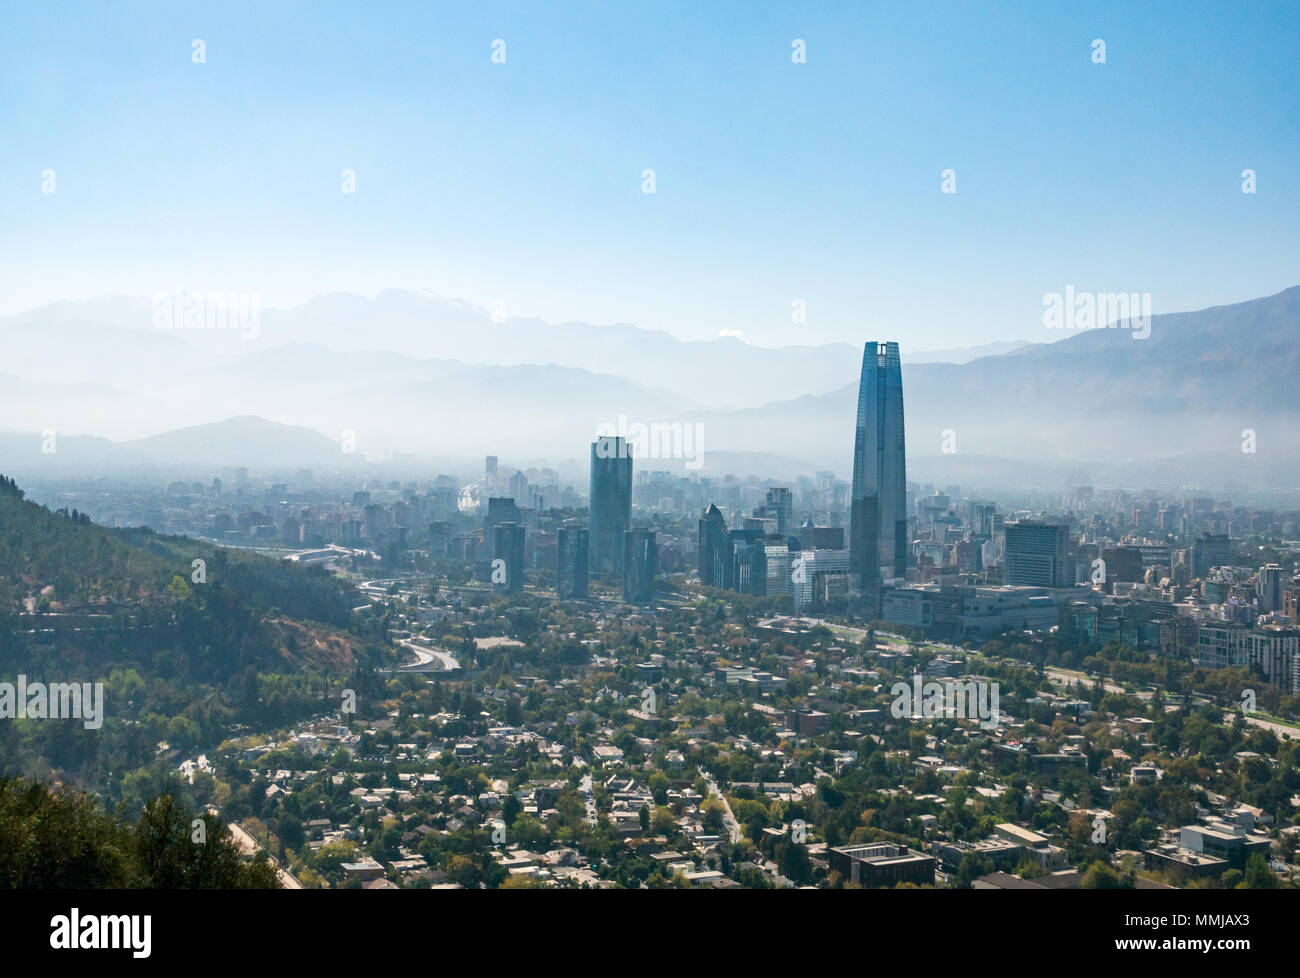 Vue paysage urbain d'une grande tour de Santiago et contreforts des Andes à partir de la colline de San Cristobal, Santiago, Chili, Amérique du Sud, avec couche de smog visible Banque D'Images